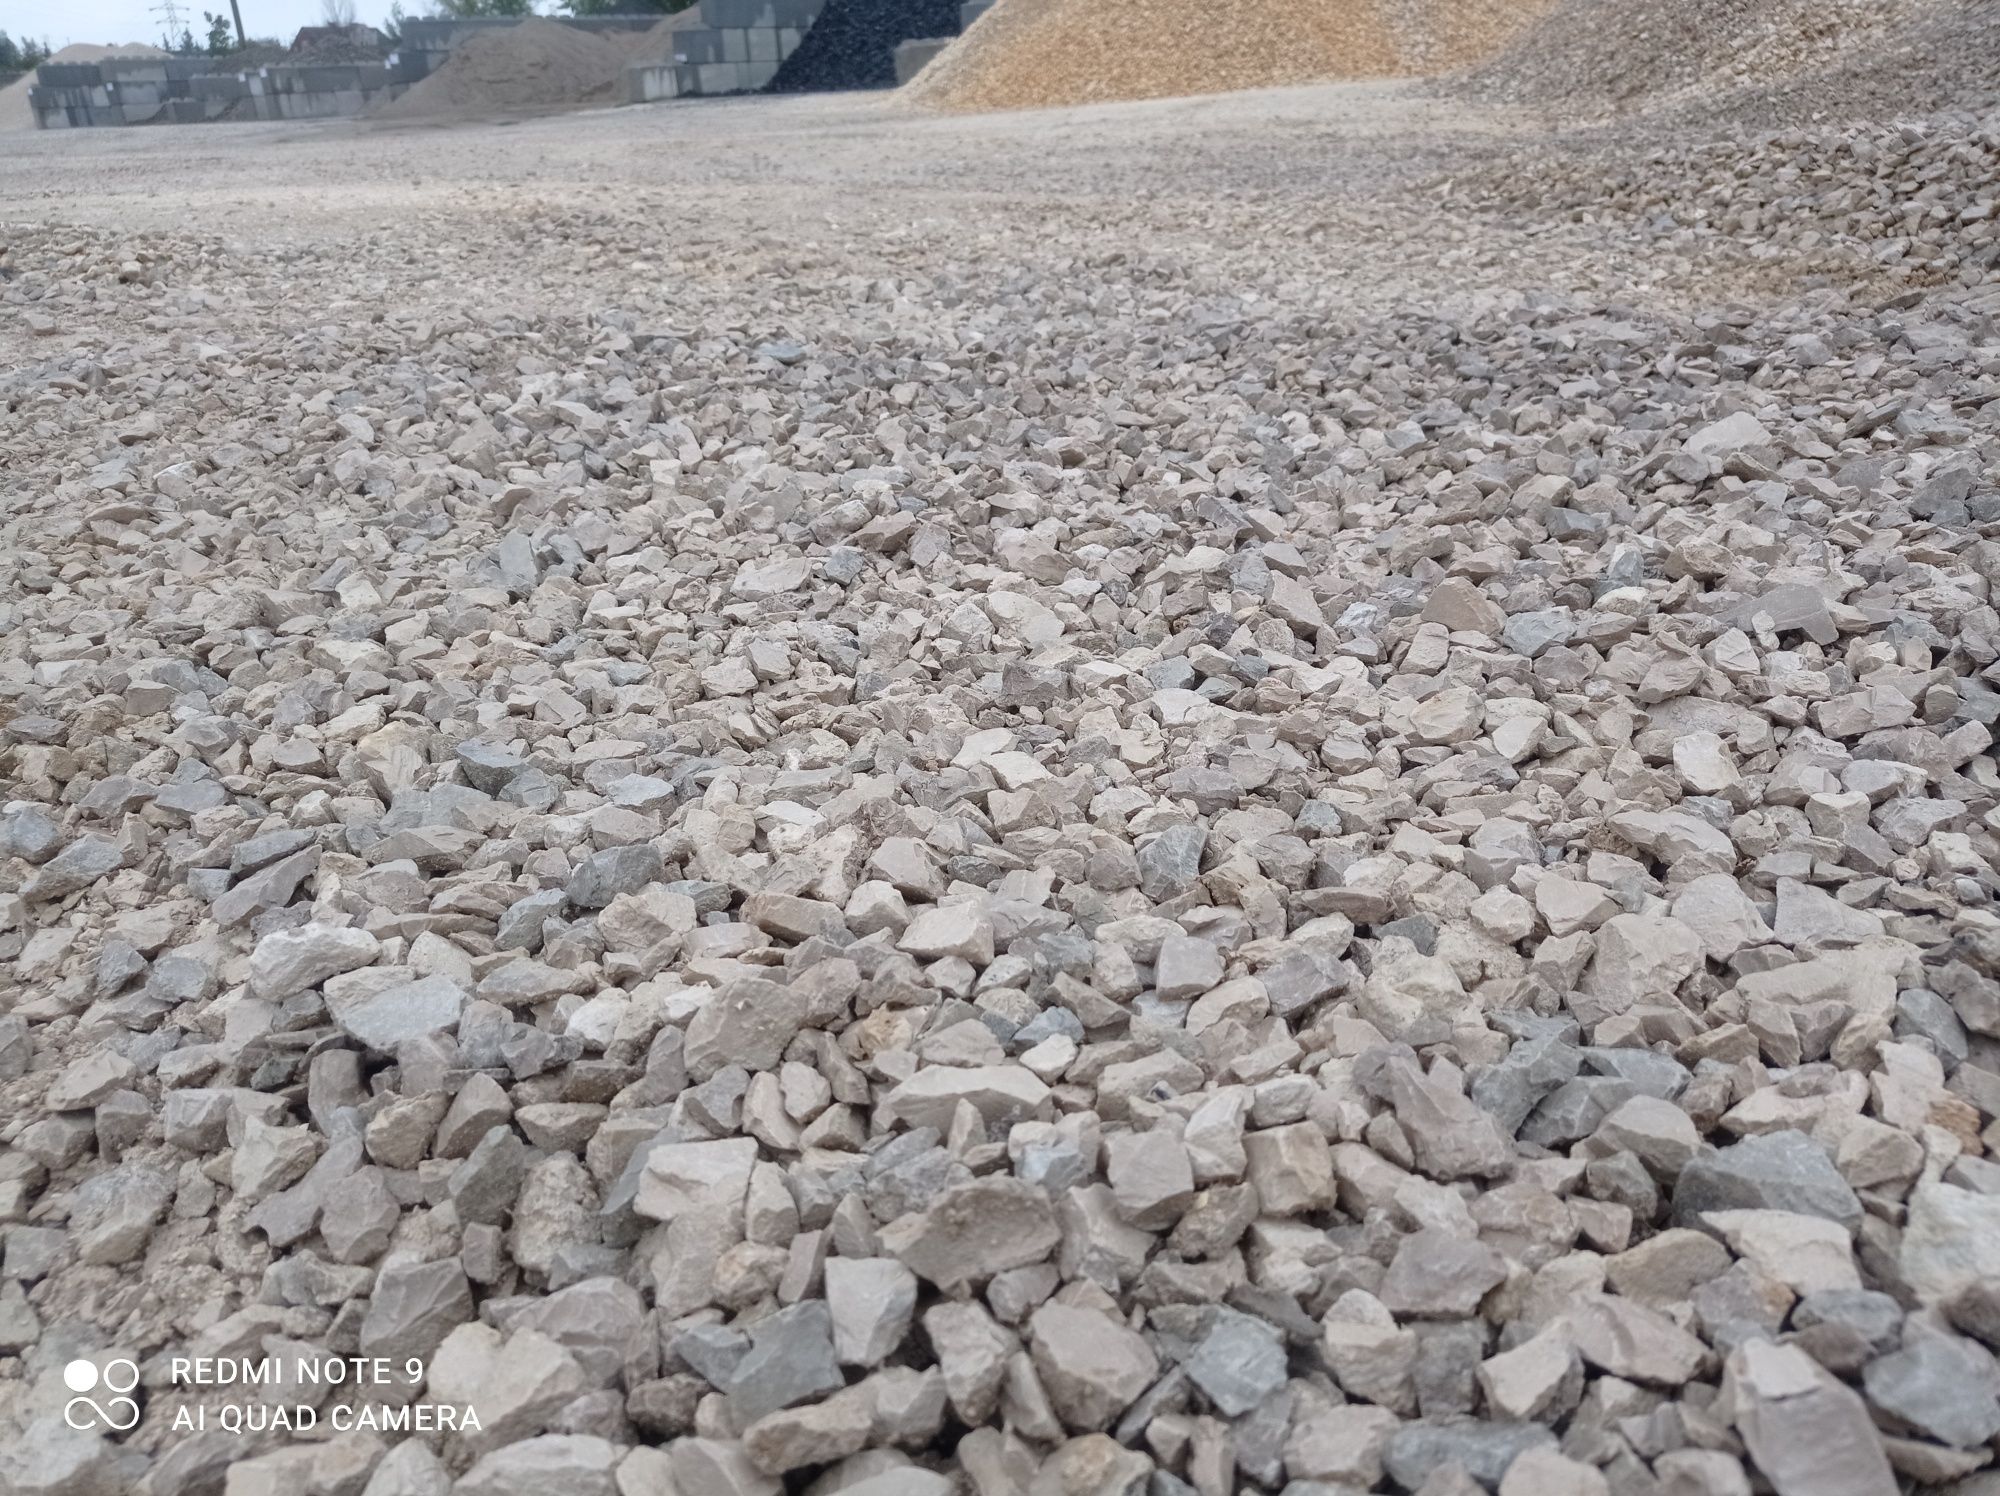 Kruszywo kliniec tłuczeń piasek grys żwir pospółka ziemia granit kora